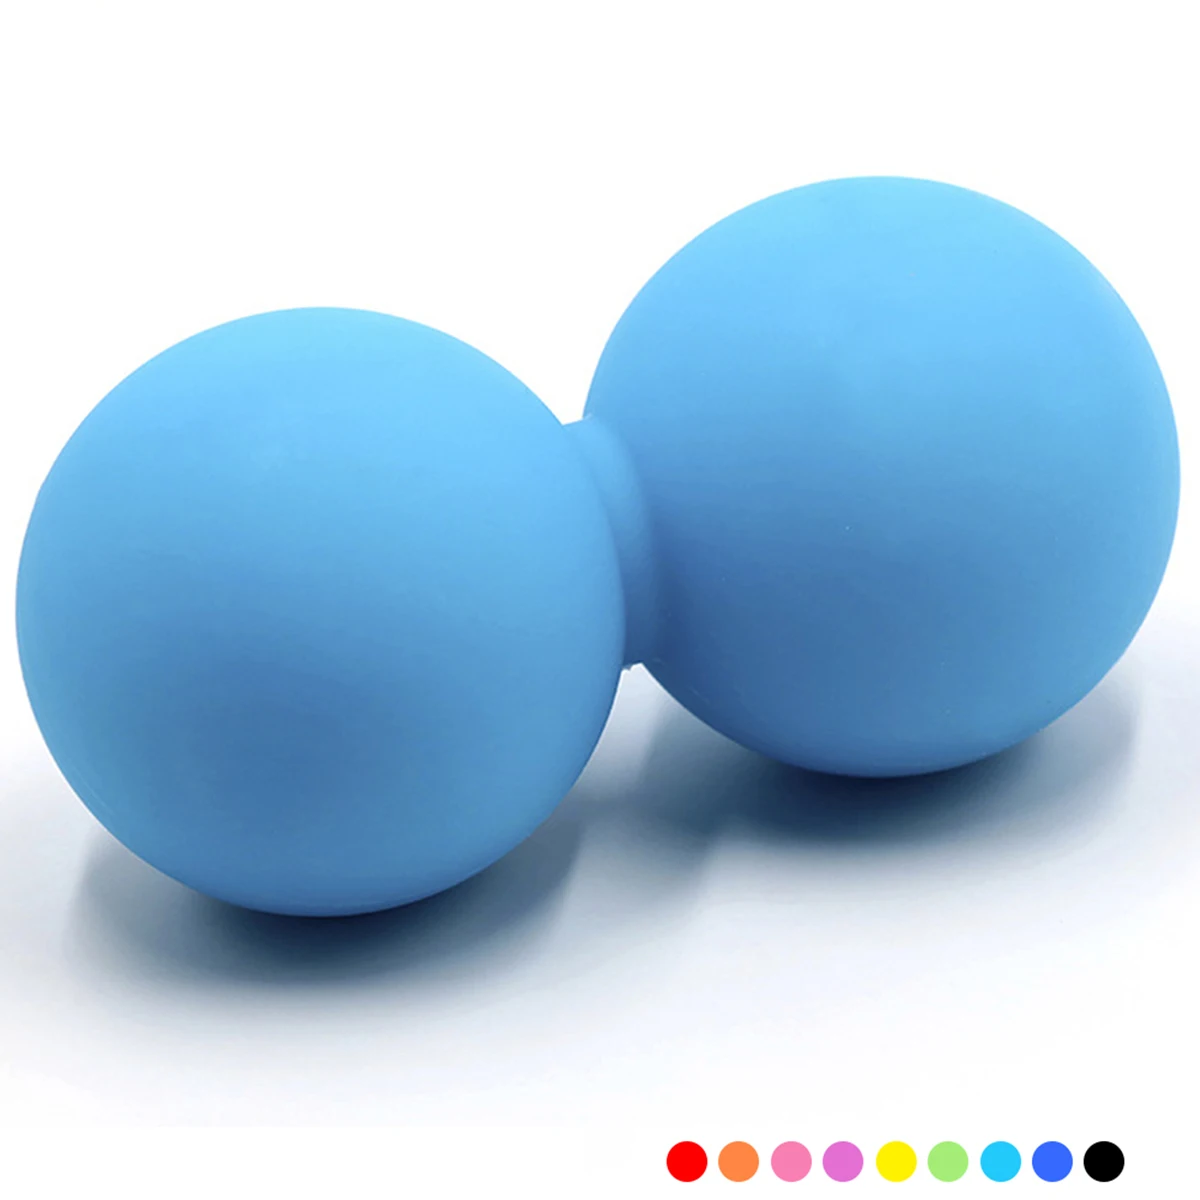 

Двойной мяч для Лакросса MyofasciaPeanut, массажный мяч высокой плотности для фитнеса, массажа тела, йоги, упражнений для облегчения боли